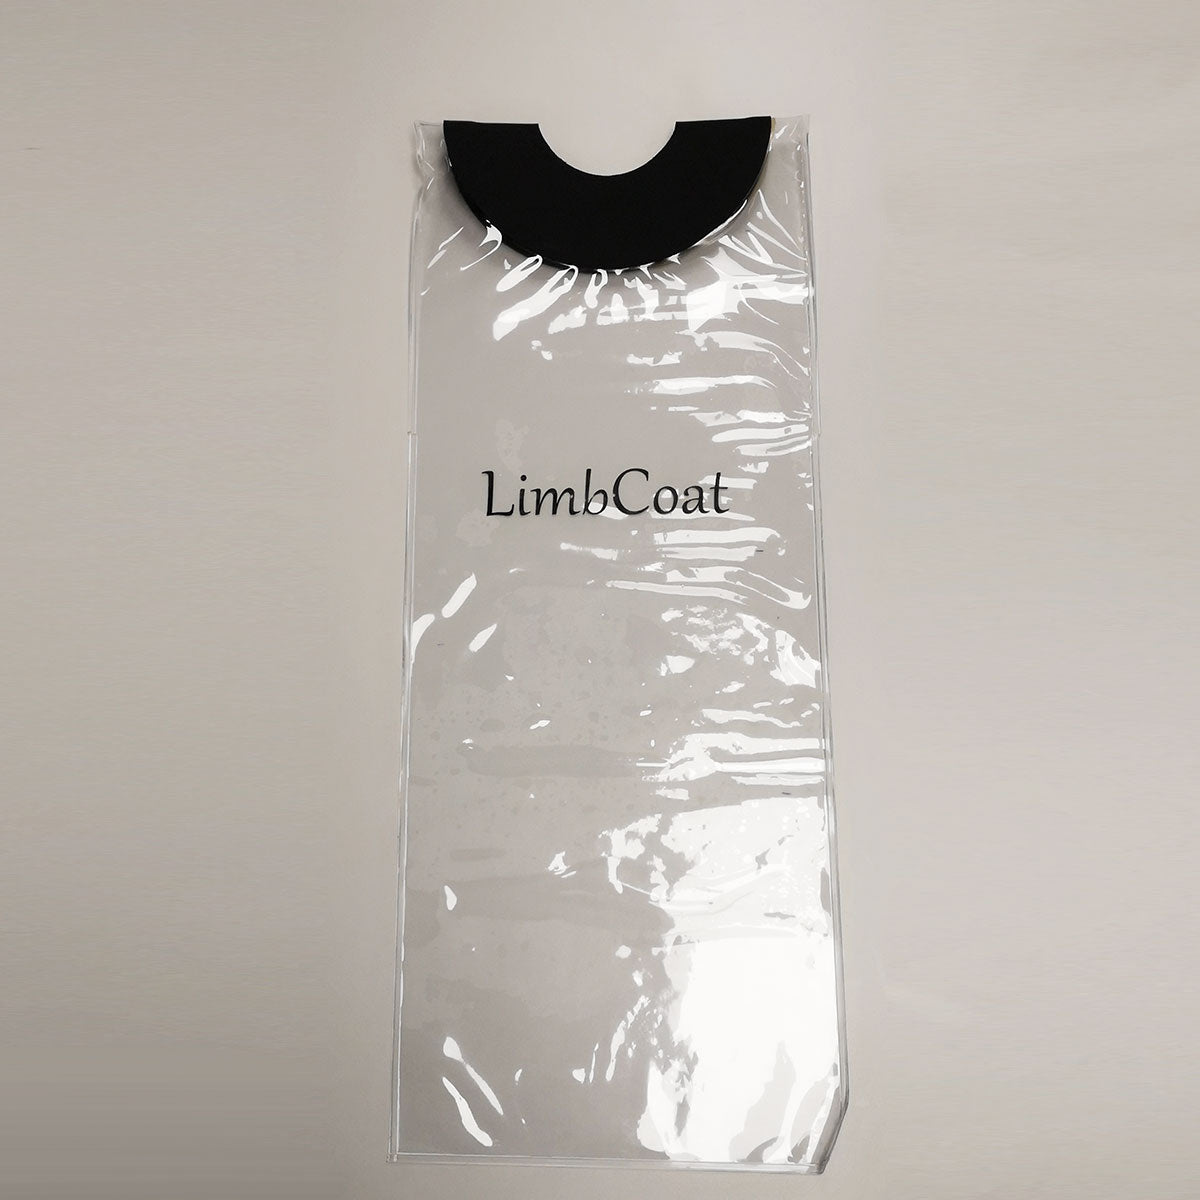 LimbCoat - Stump